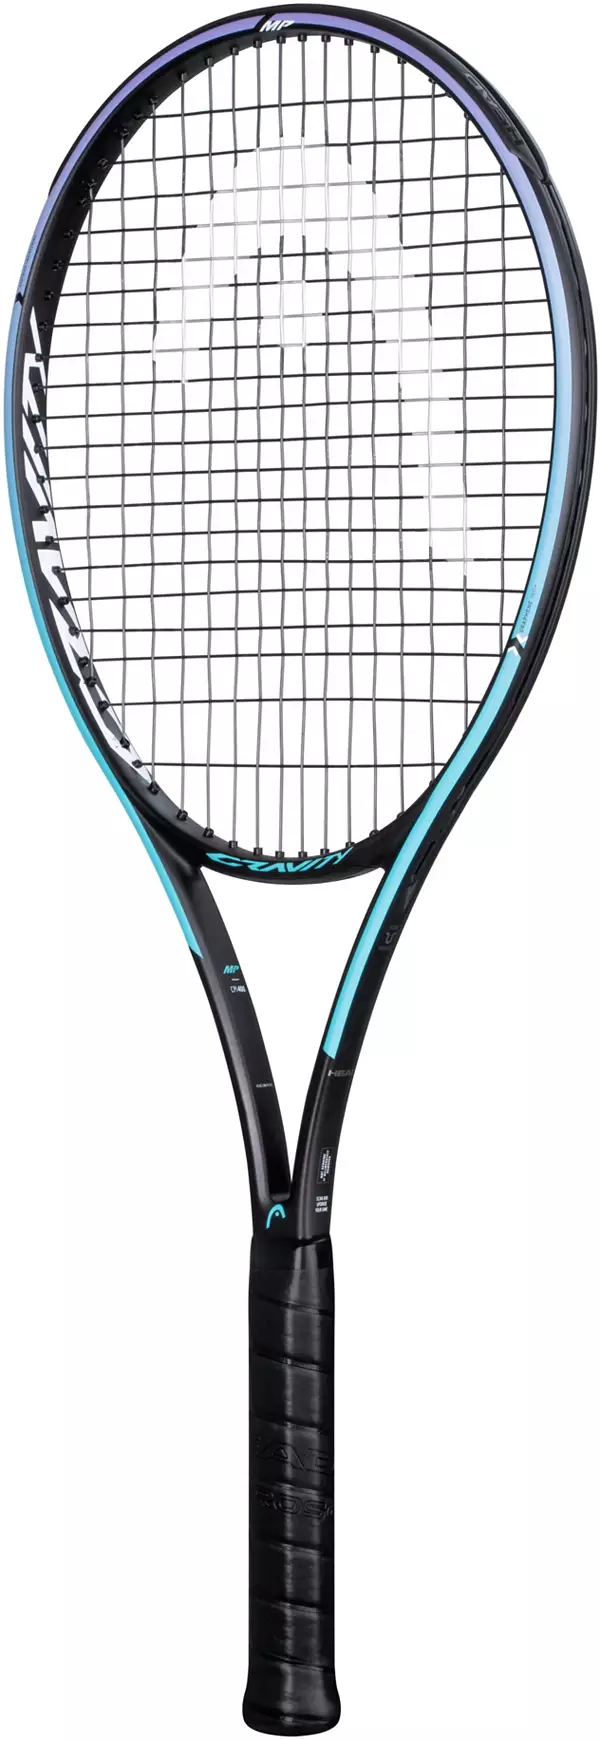 Head Graphene 2021 Gravity MP Tennis Racquet - Unstrung